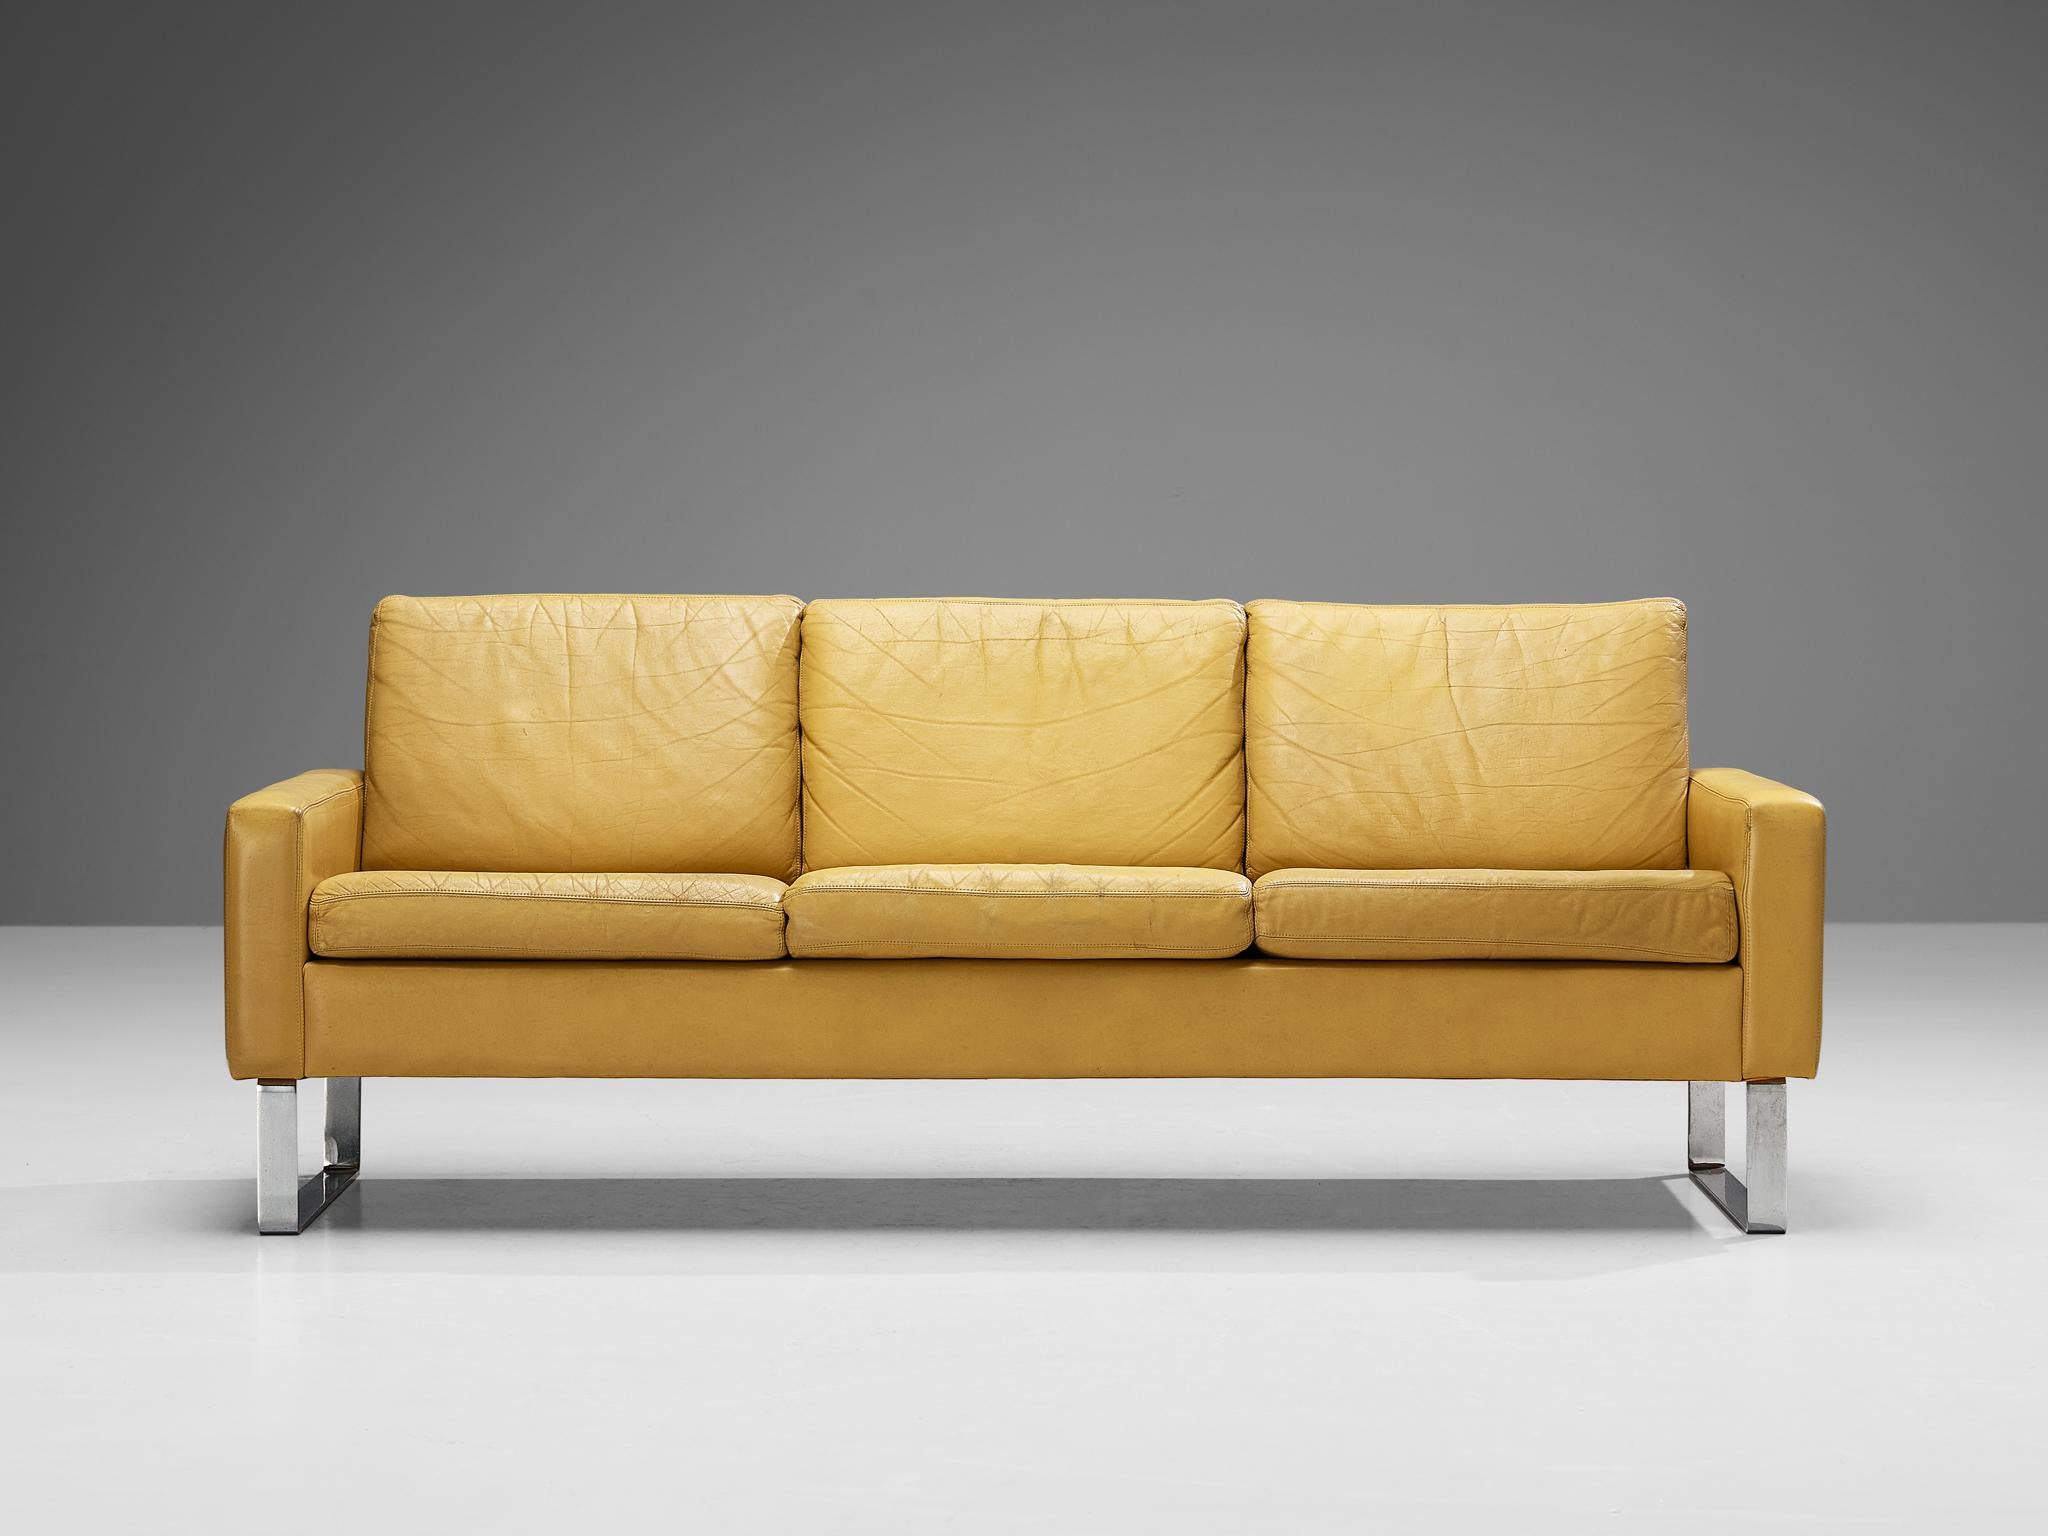 Sofa, Leder, verchromter Stahl, Deutschland, 1960er Jahre

Dieses stromlinienförmige Sofa hat ein einfaches Aussehen, aber die Kombination von MATERIALEN und die definierte Geometrie dieses Stücks, dieses Sofa strahlt Anmut und Stil aus. Der mit